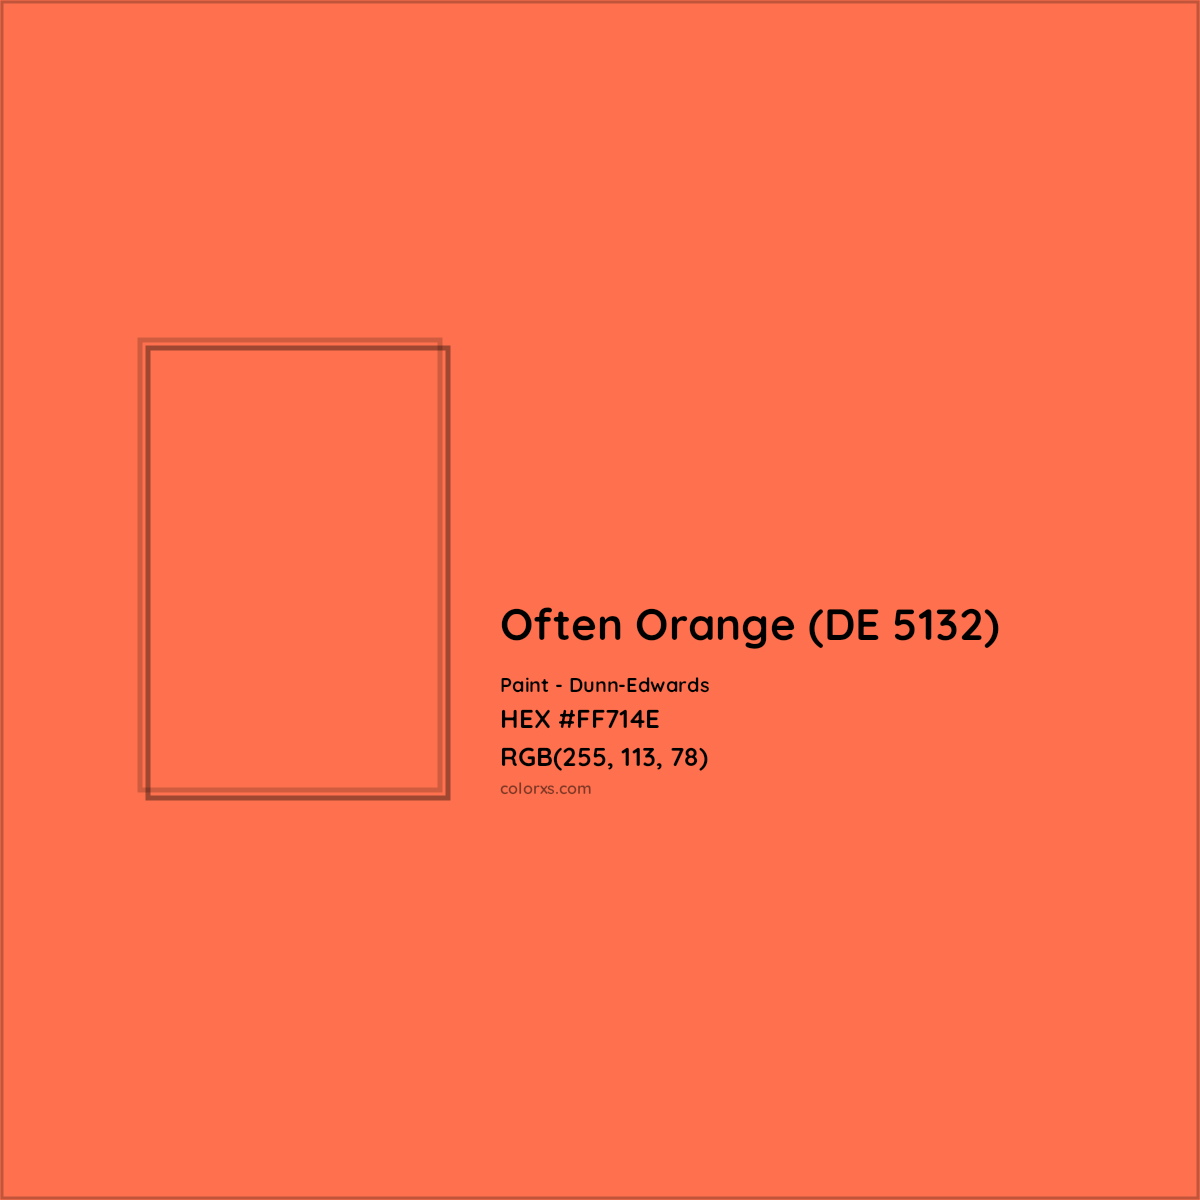 HEX #FF714E Often Orange (DE 5132) Paint Dunn-Edwards - Color Code